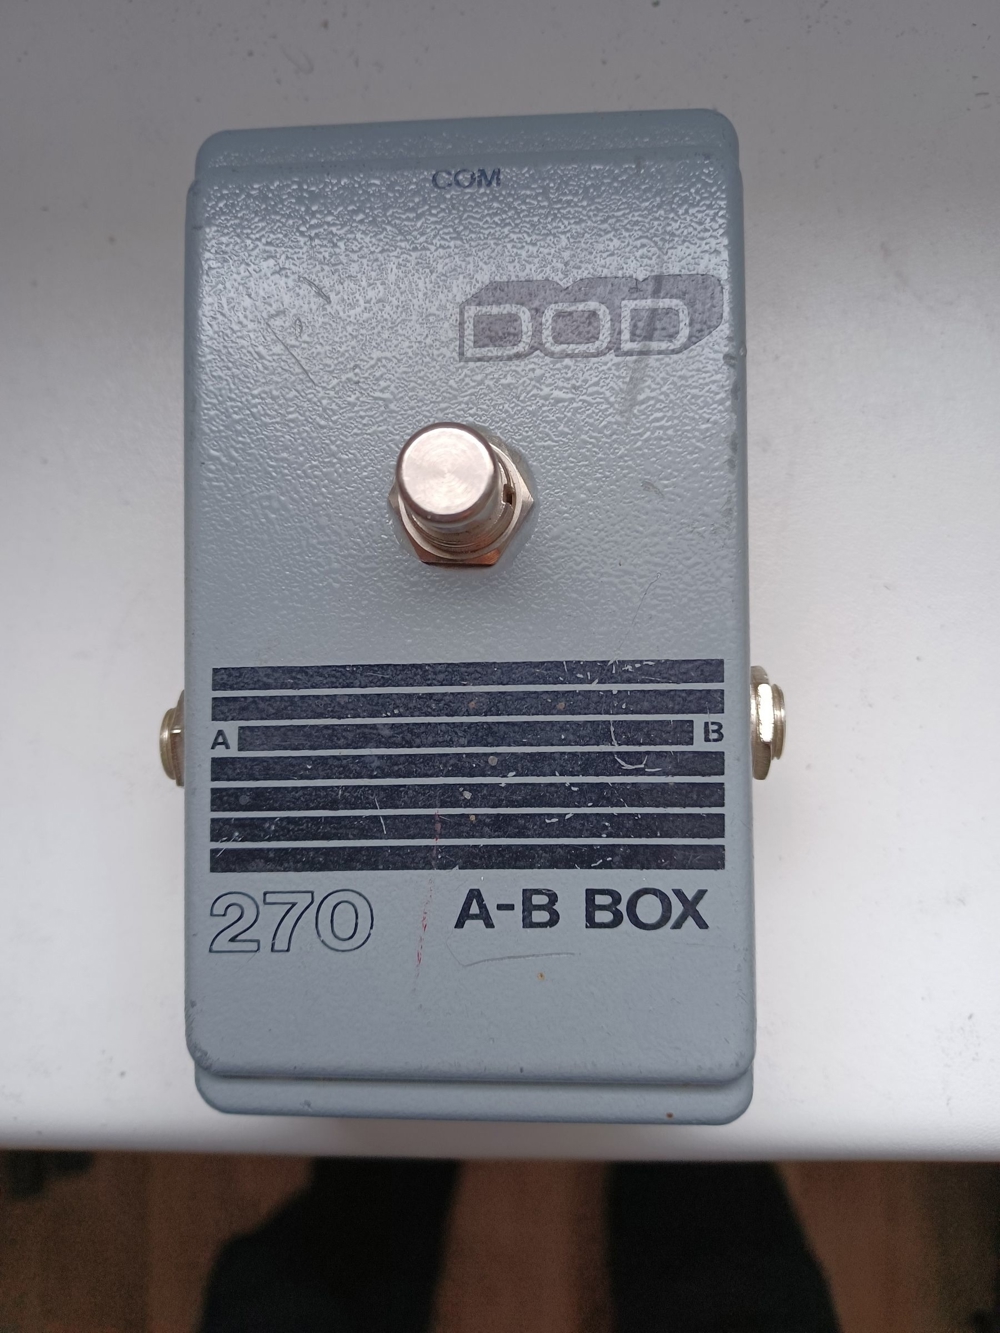 A-B Box (DOD 270)